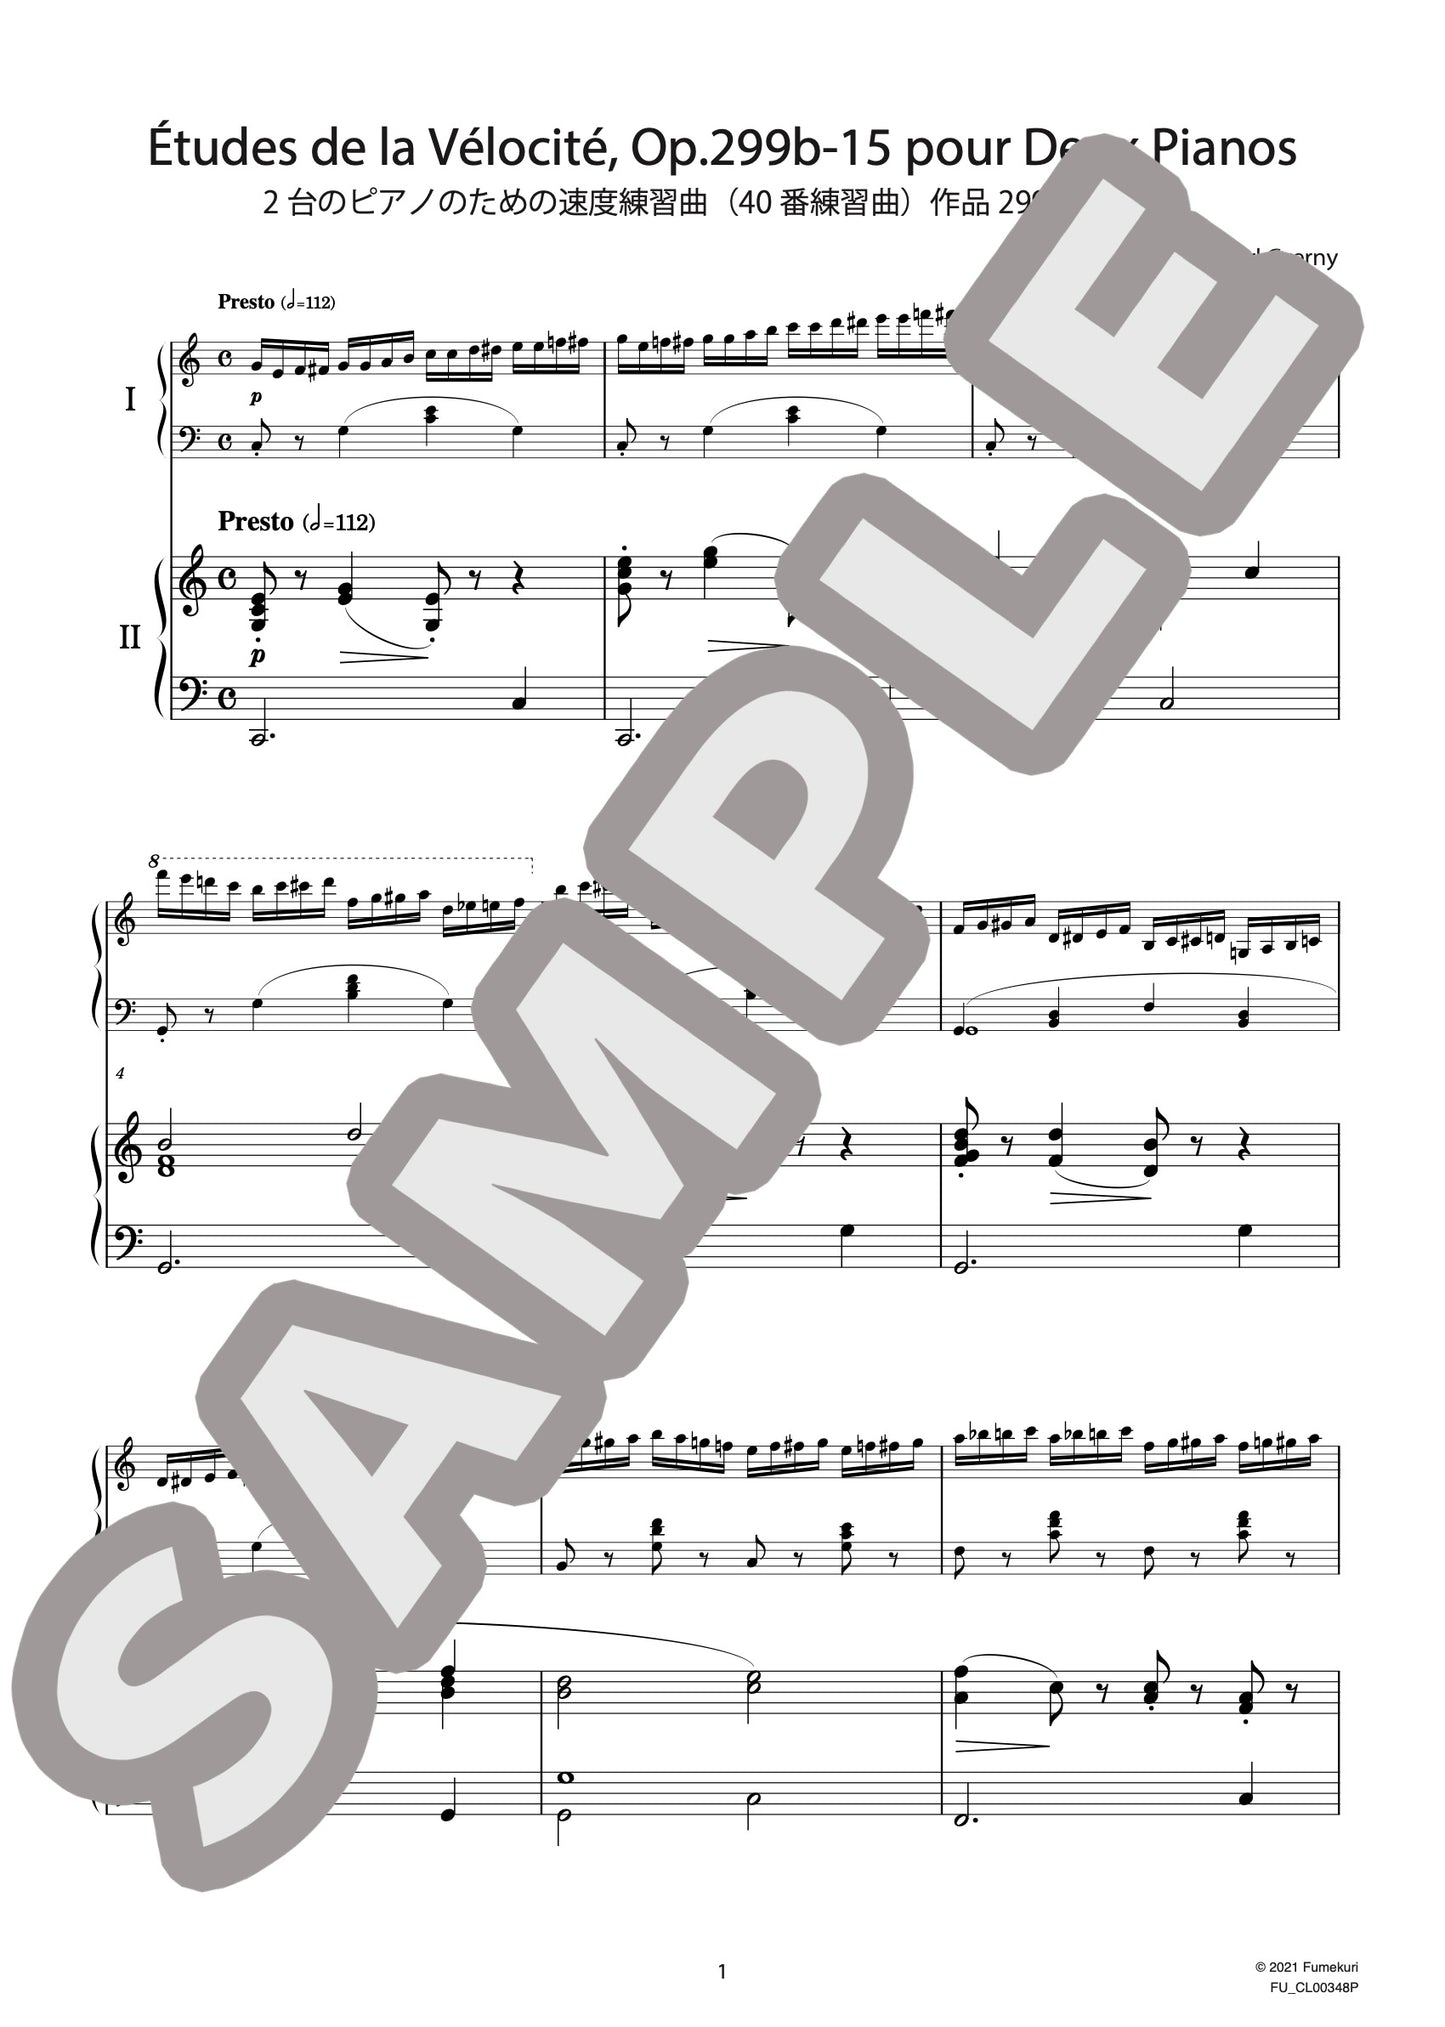 2台のピアノのための速度練習曲（40番練習曲）作品299b 第15番（CZERNY) / クラシック・オリジナル楽曲【中上級】